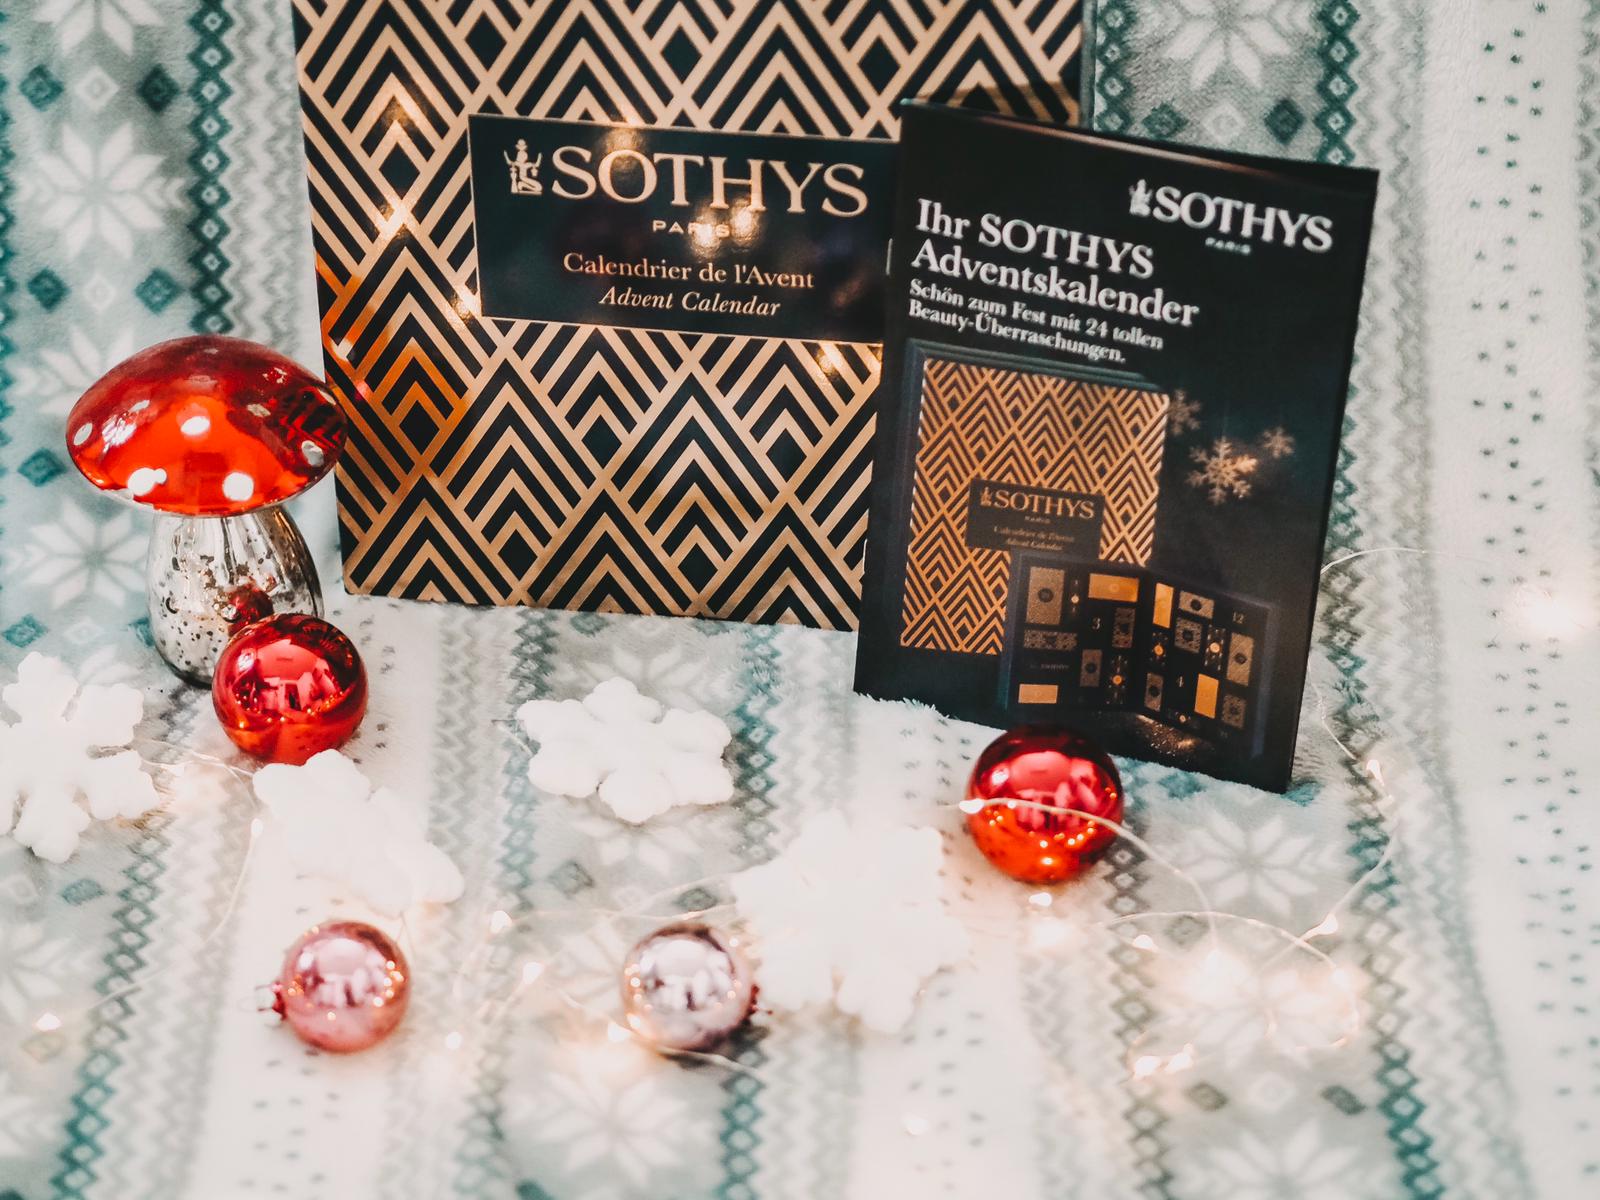 Der Sothys Adventskalender 2019 mit 24 hochwertigen Beauty-Überraschungen versüsst uns die kommende Weihnachtszeit. Heute mehr dazu auf meinem Beauty Blog !